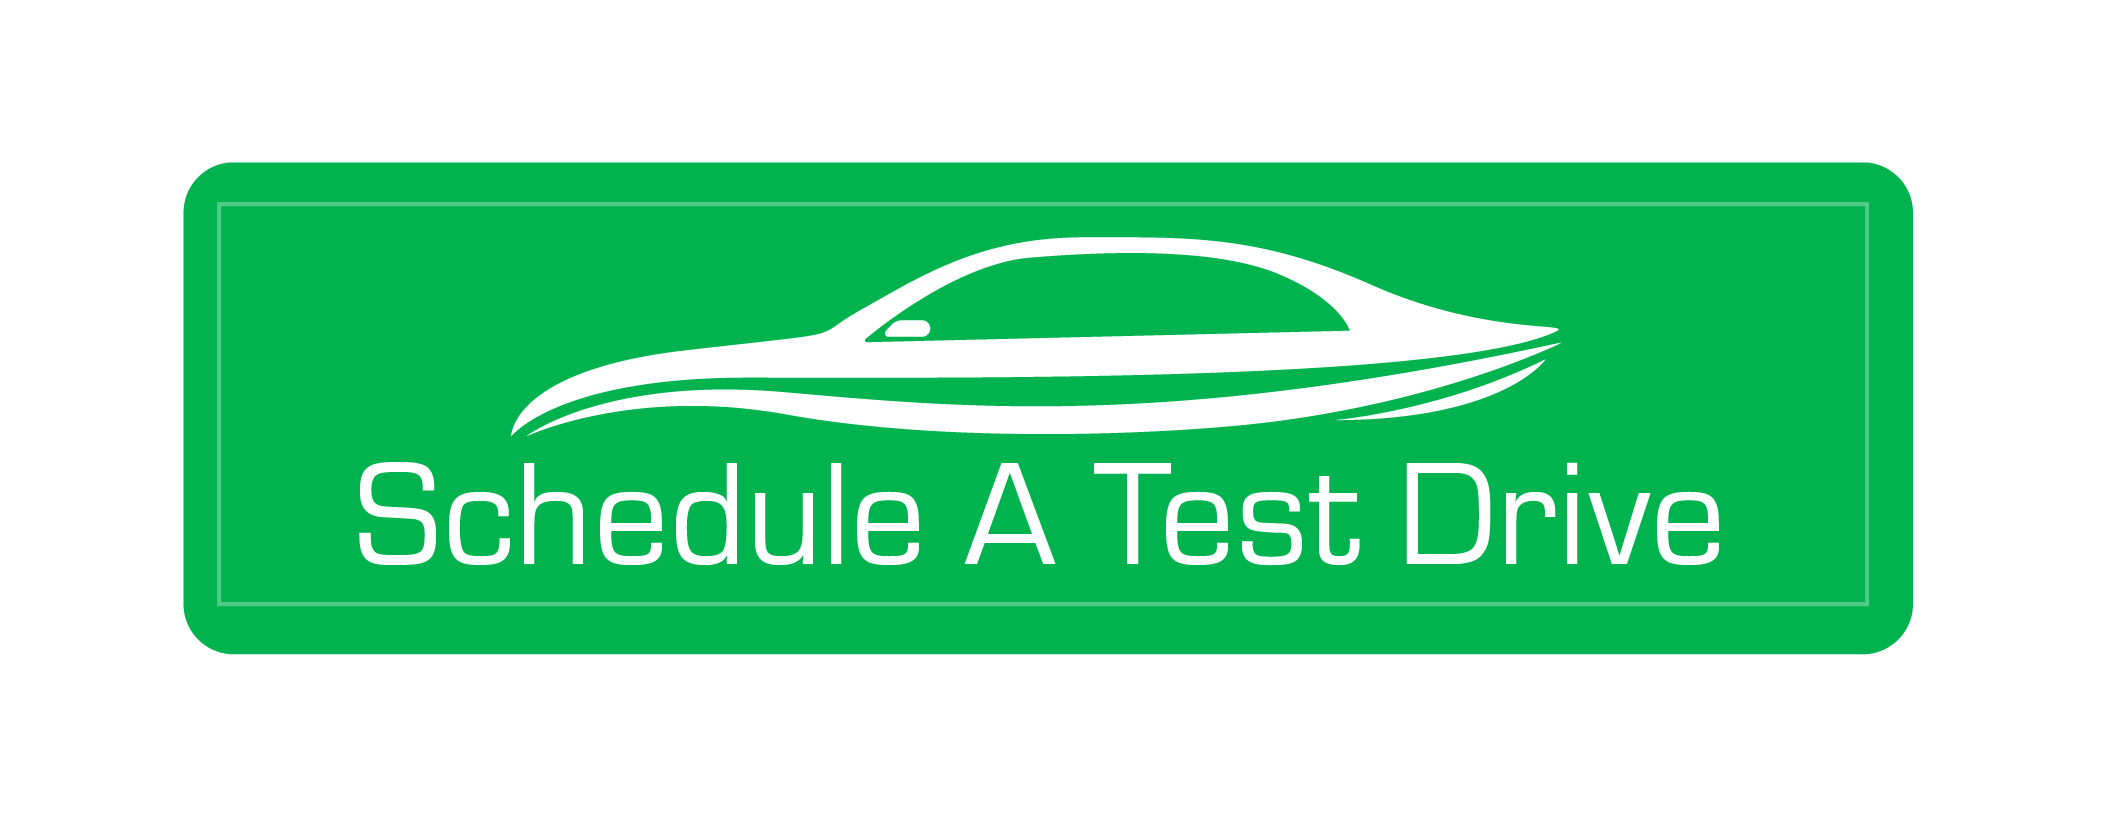 Schedule A Test Drive